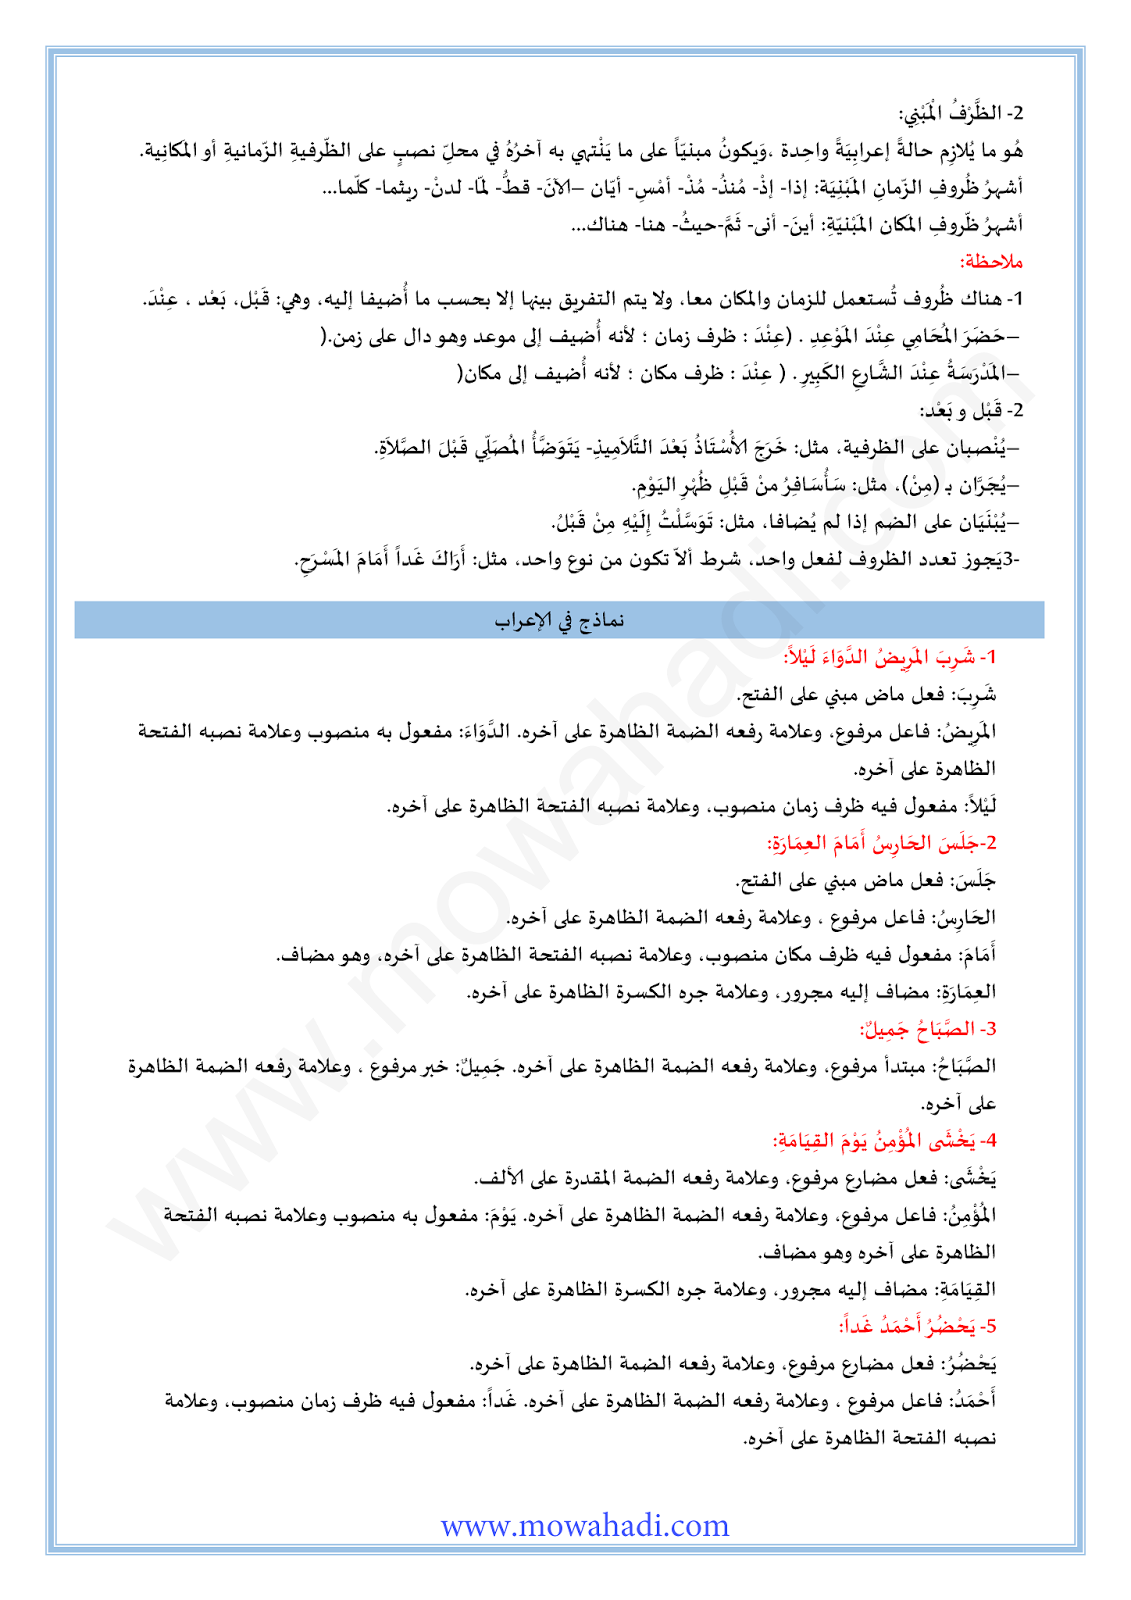 الدرس اللغوي المفعول فيه للسنة الثانية اعدادي في مادة اللغة العربية 8-cours-loghawi2_003